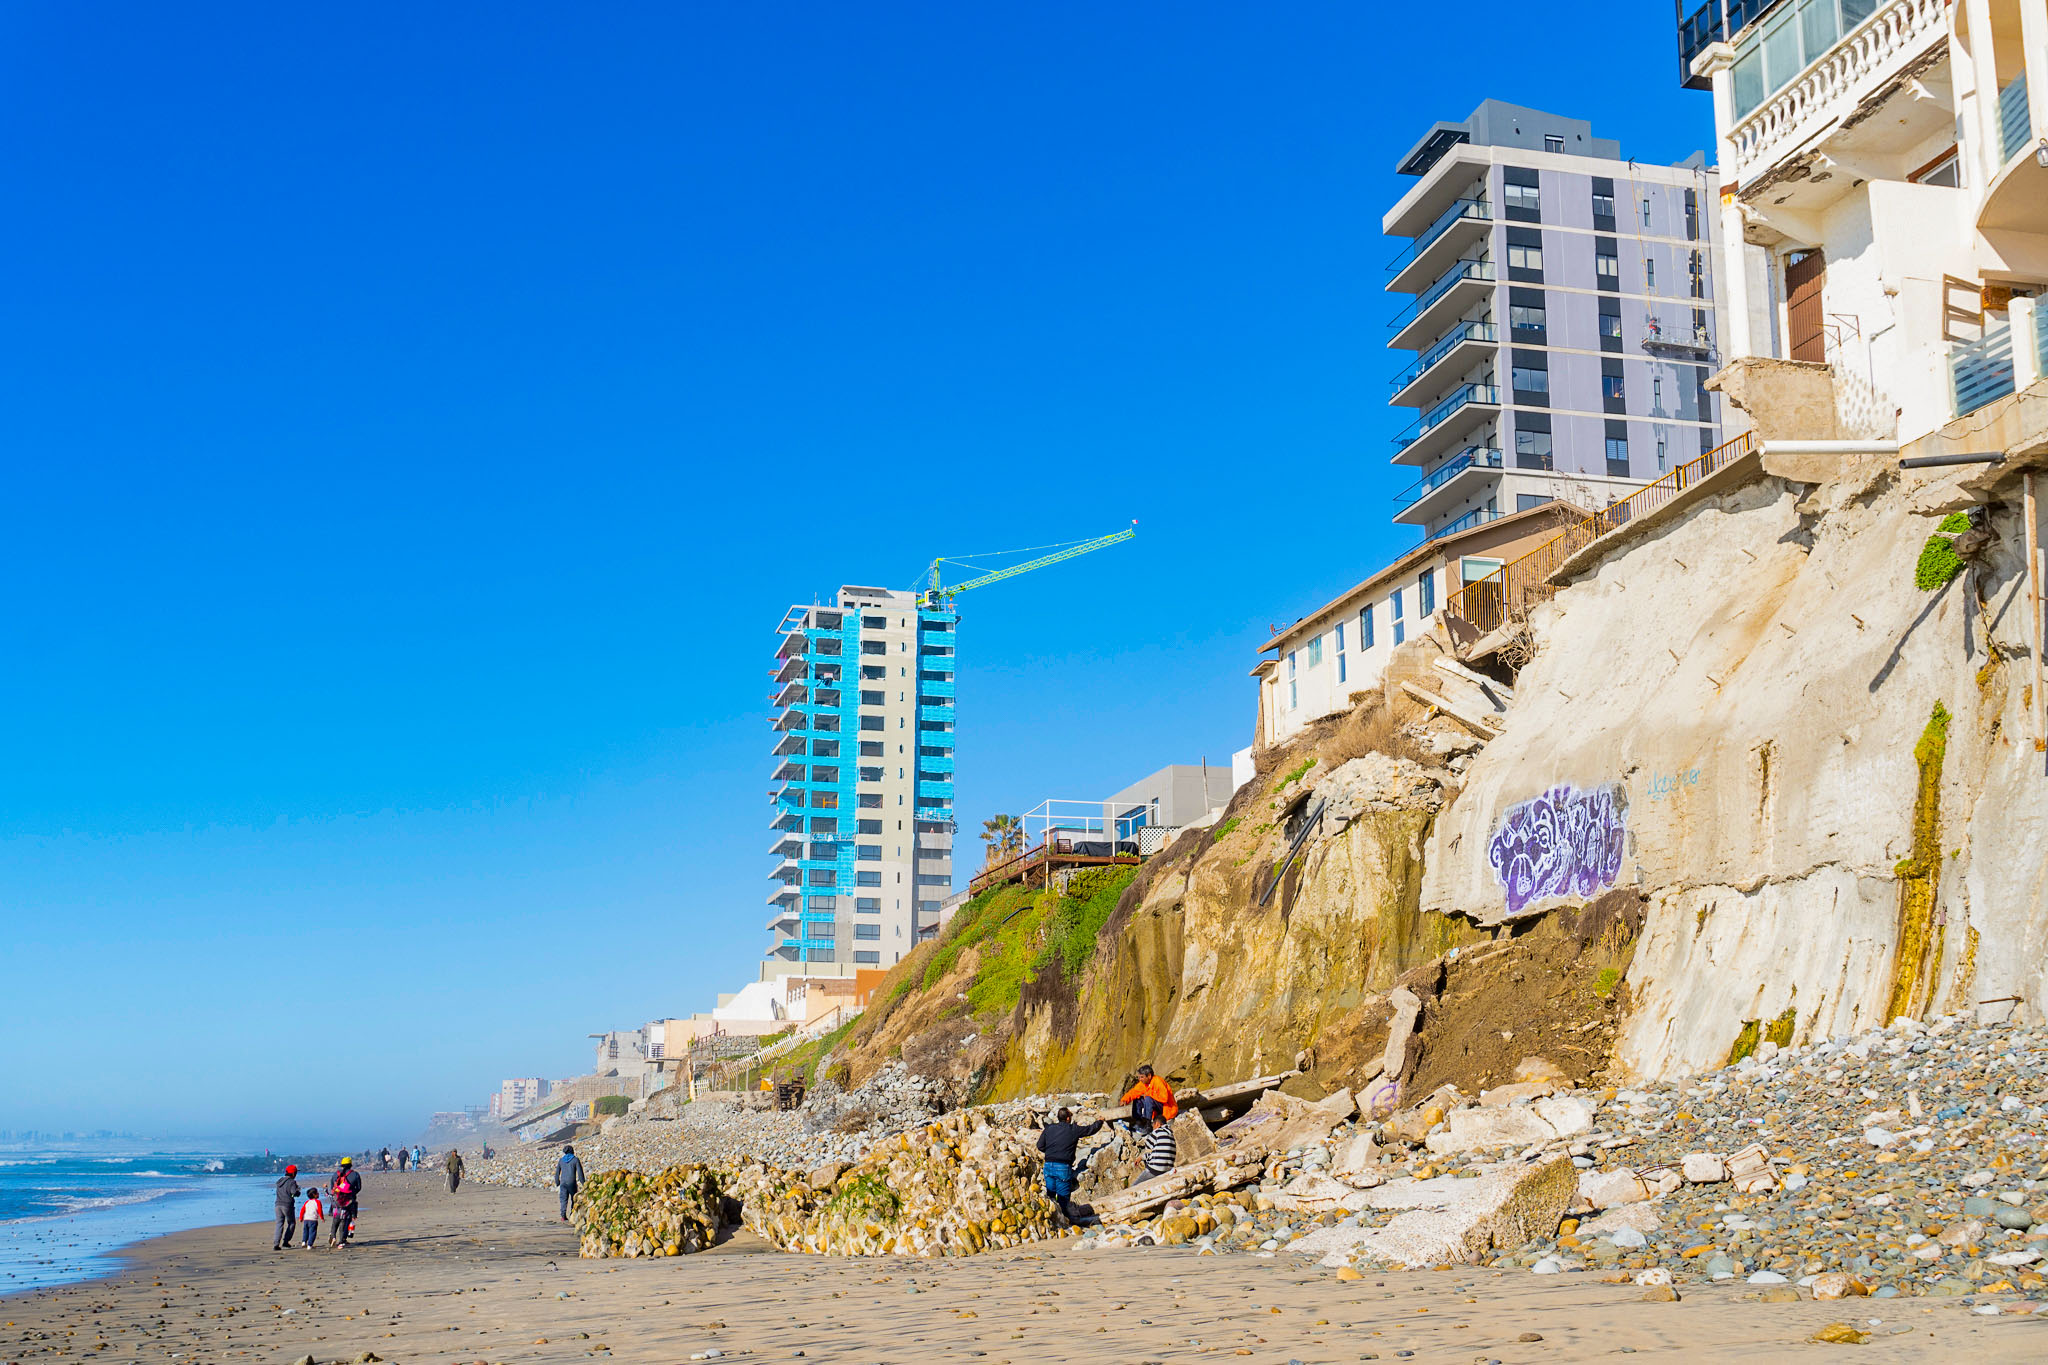 Playas de Tijuana Residuos fecales arrojados al mar impiden el turismo 3